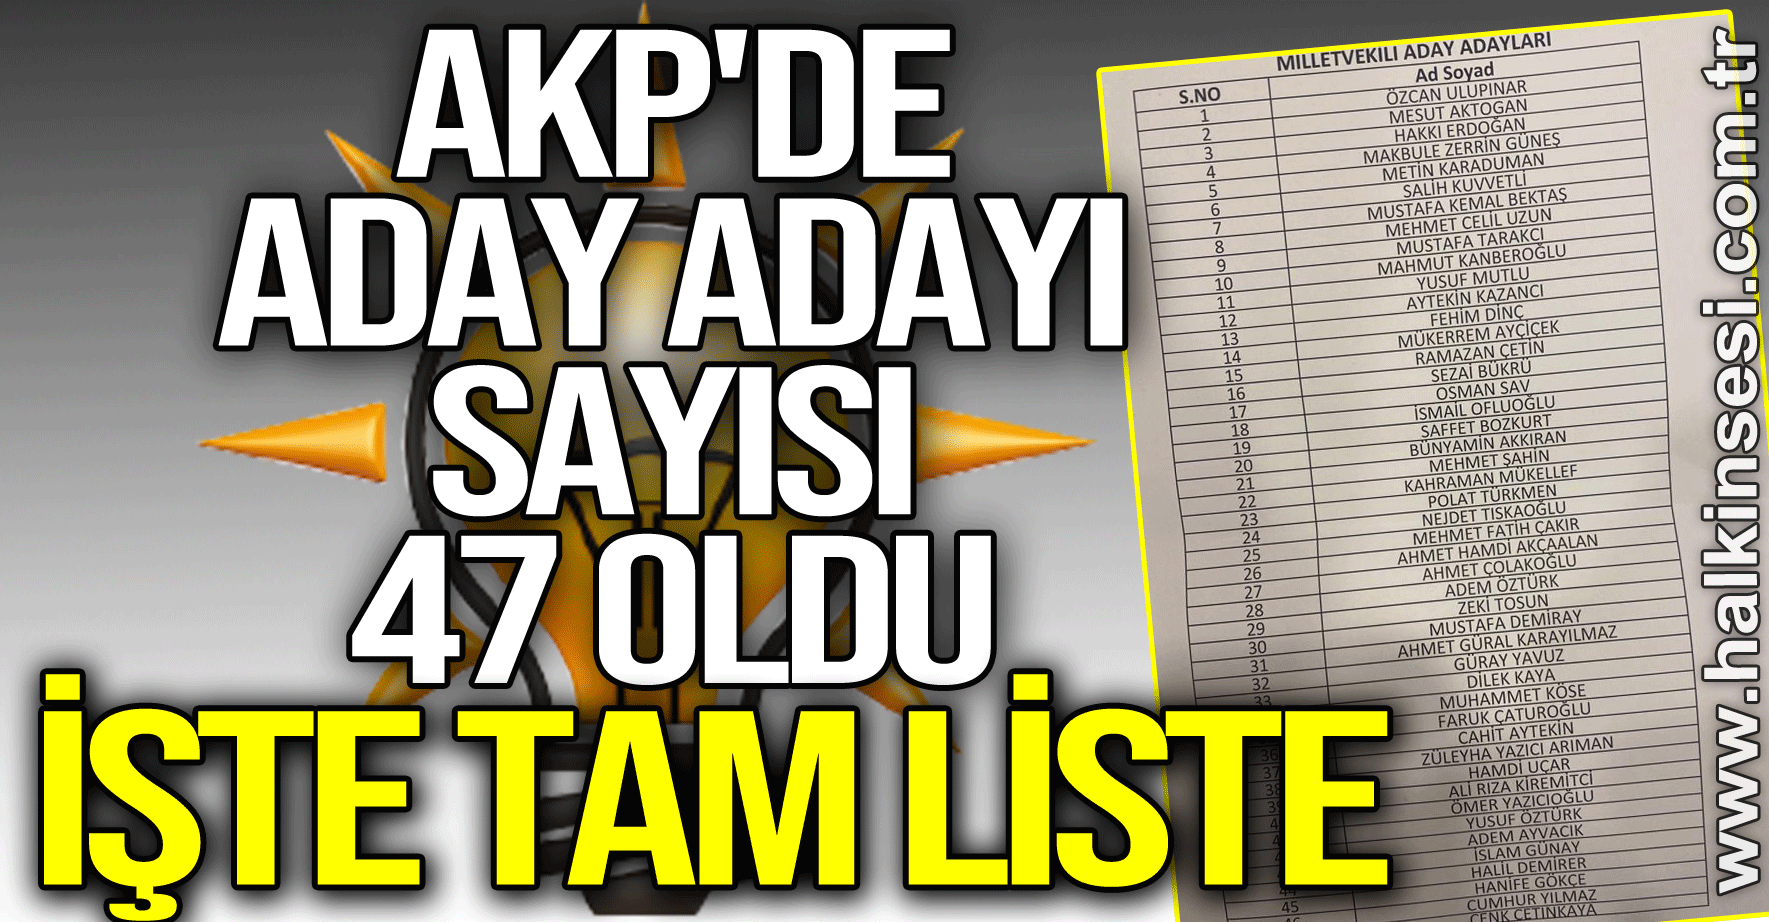 AKP'DE ADAY ADAYI SAYISI 47 OLDU